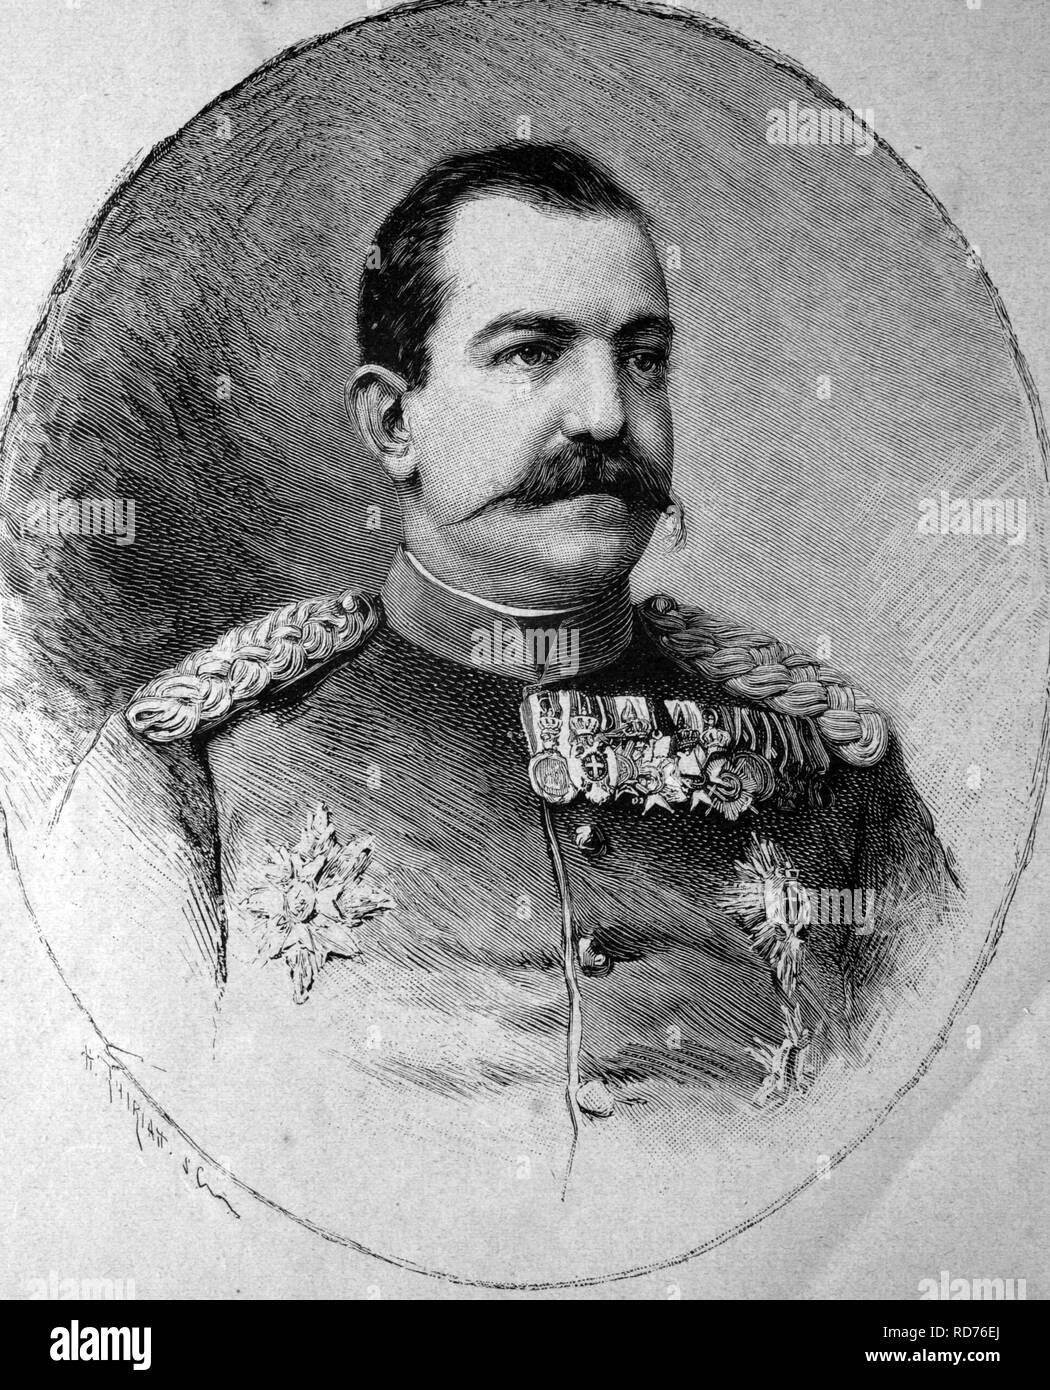 Milan ich (1854-1901), König von Serbien, historische Abbildung, ca. 1886 Stockfoto